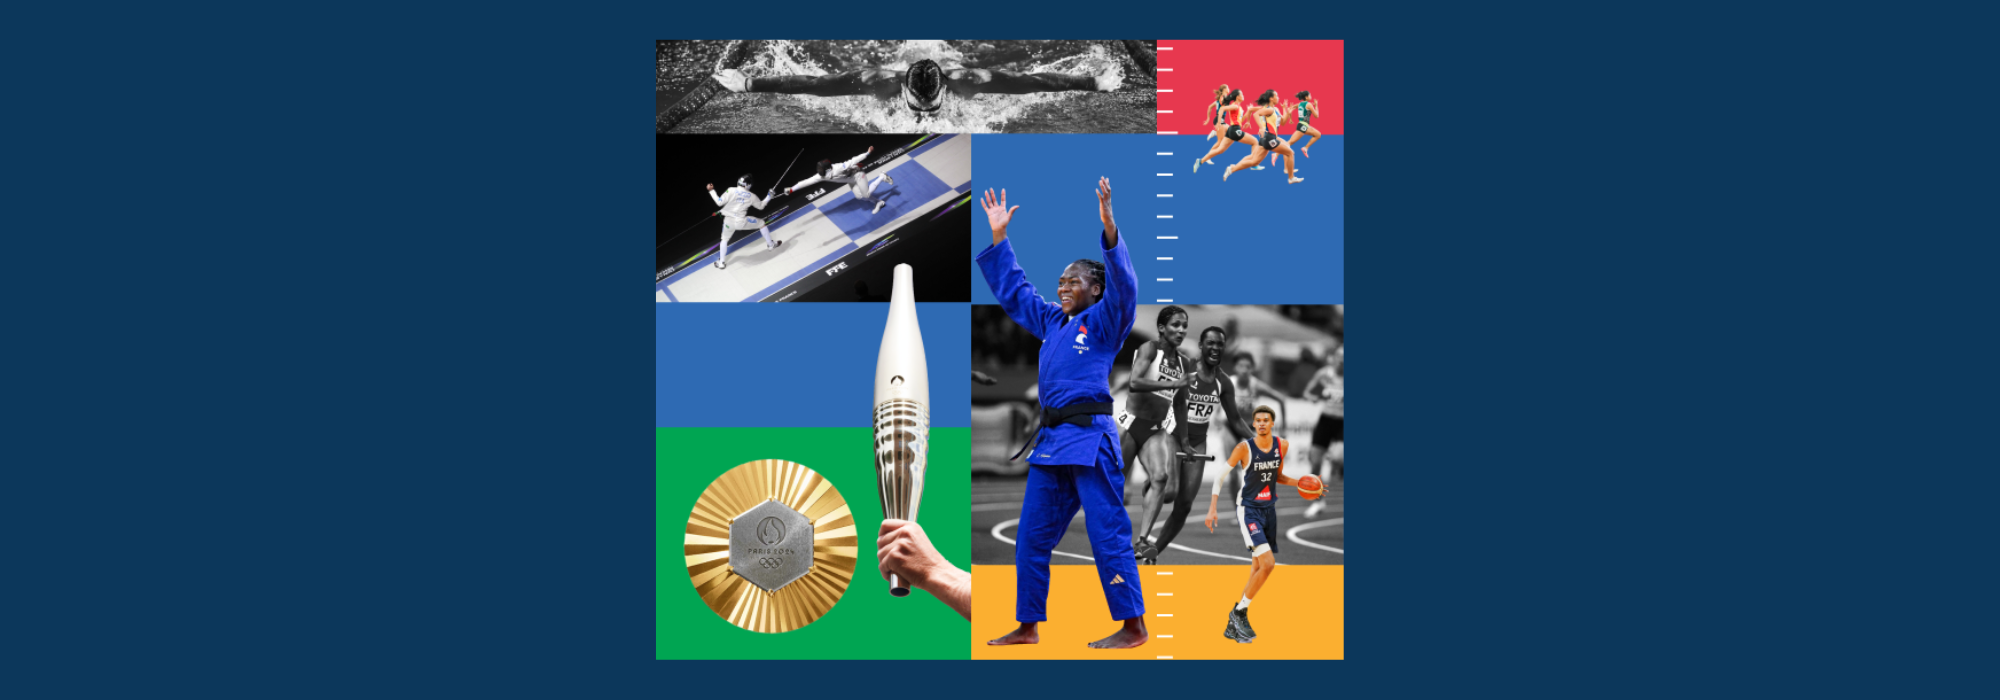 Le dispositif éditorial du Parisien pour les Jeux Olympiques et Paralympiques 